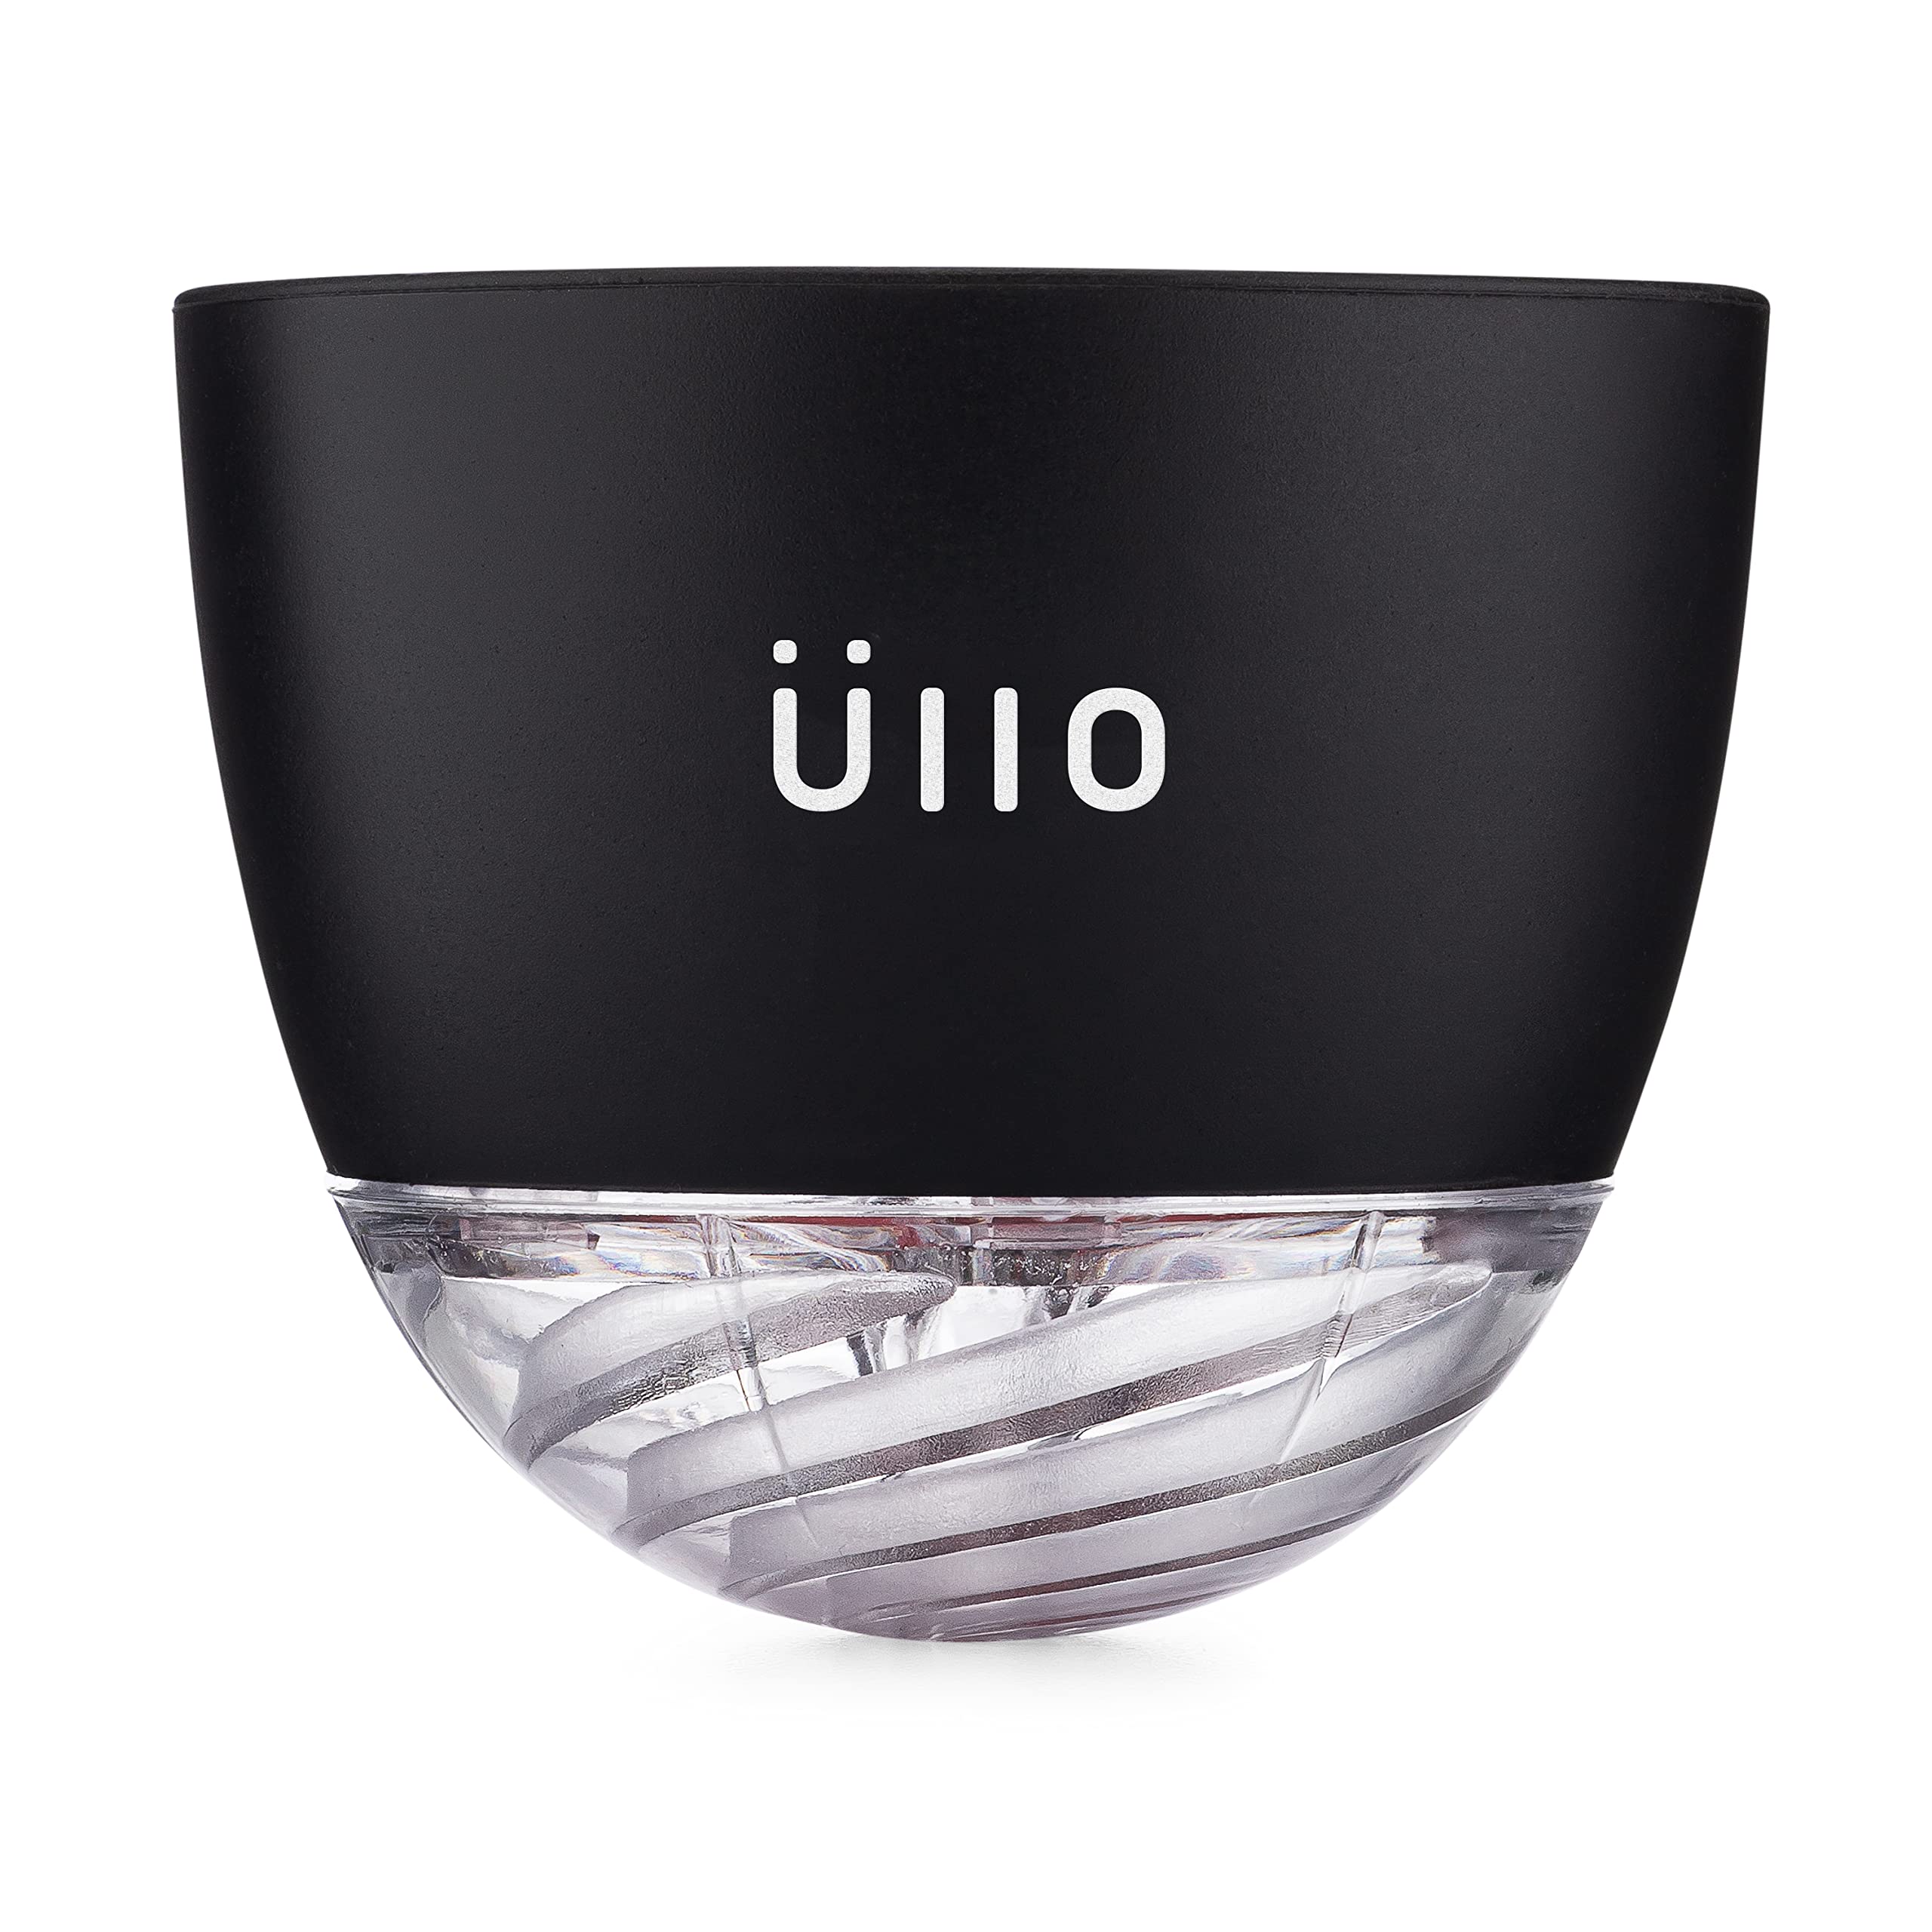 ULLO 带 4 个选择性亚硫酸盐过滤器的葡萄酒净化器。去除亚硫酸盐和组胺，恢复味道，通气，体验纯净葡萄酒的魔力。